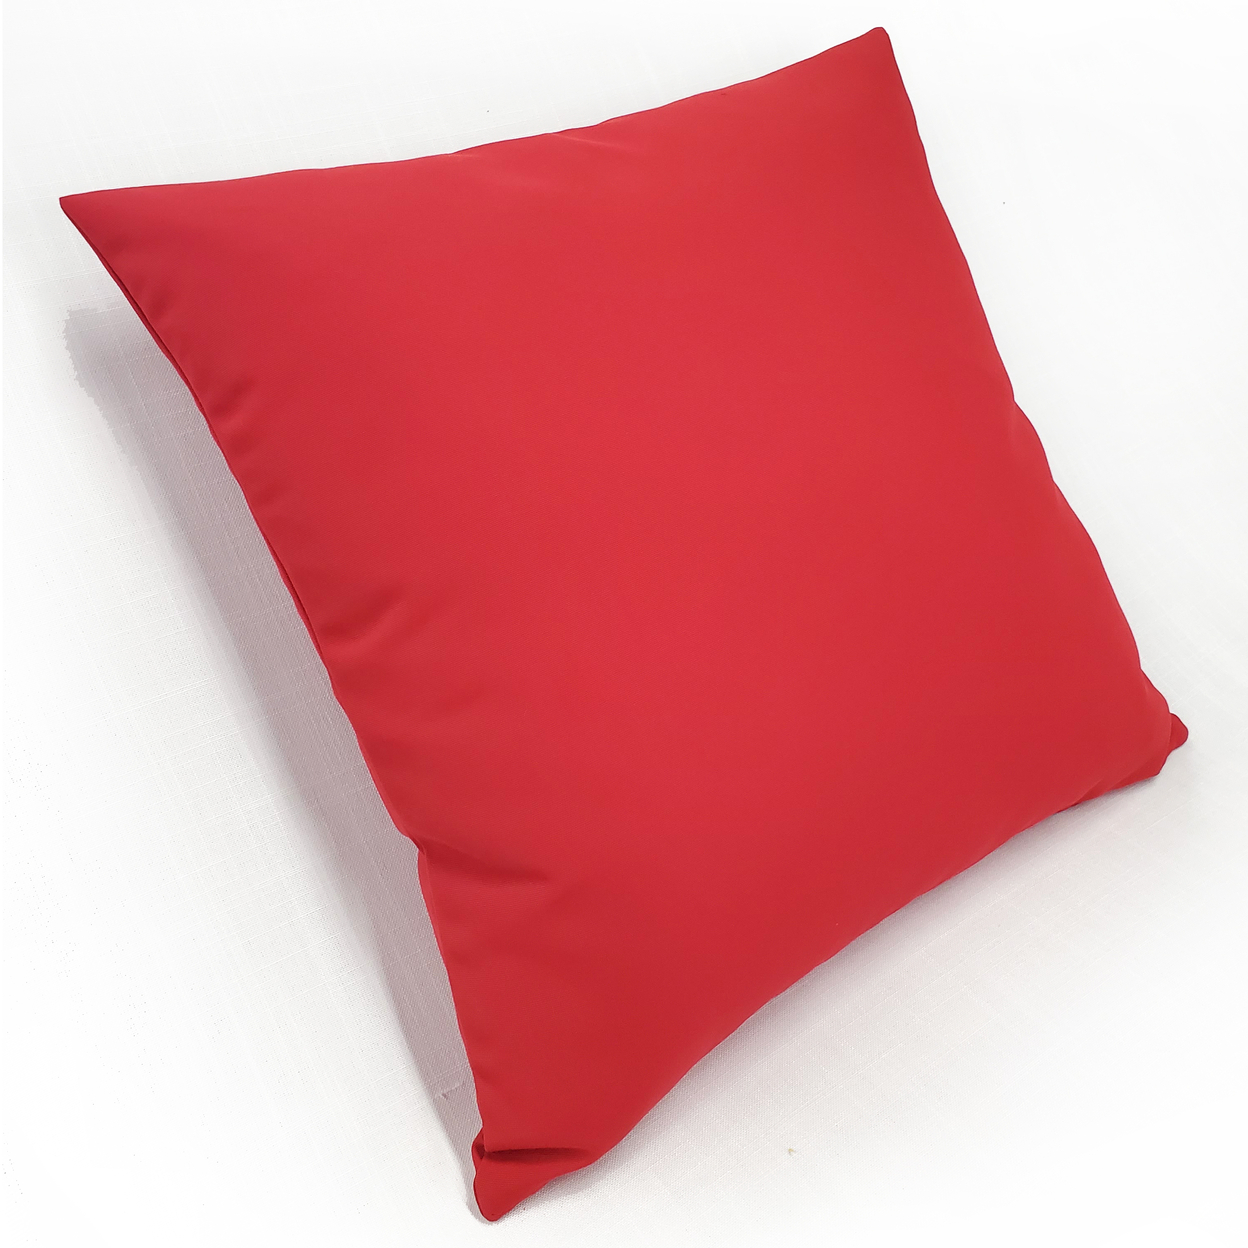 Sunbrella Jockey Red Outdoor Pillow 20x20, With Polyfill Insert